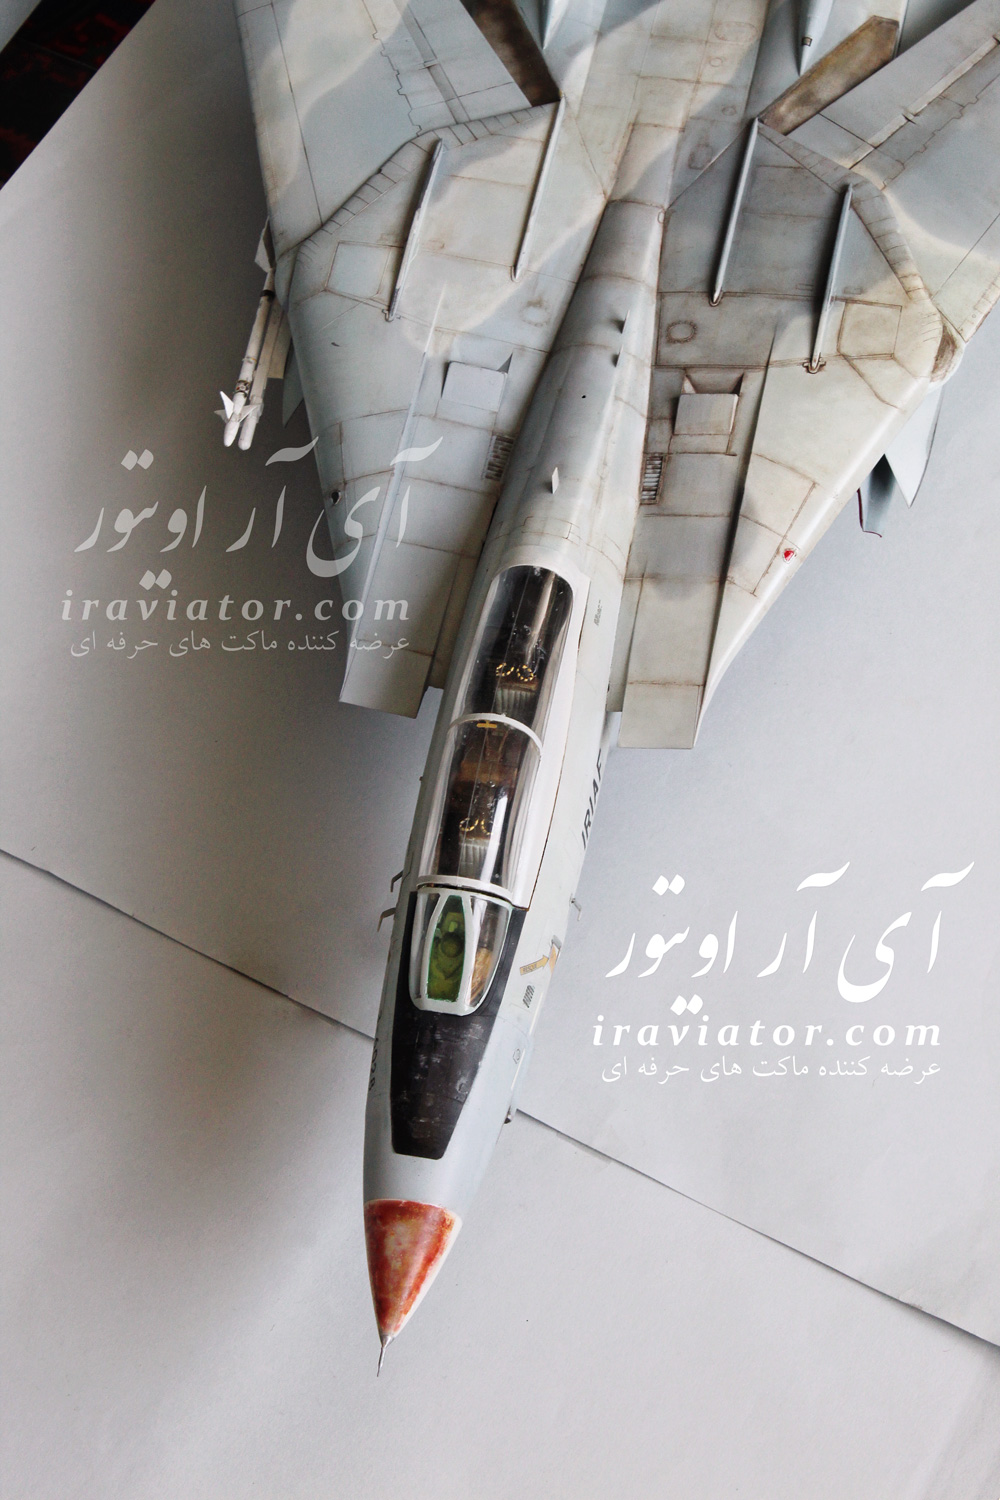 ماکت جنگنده شکاری رهگیر اف ۱۴، F-14 نیروی هوایی جمهوری اسلامی ایران مقیاس ۱/۳۲